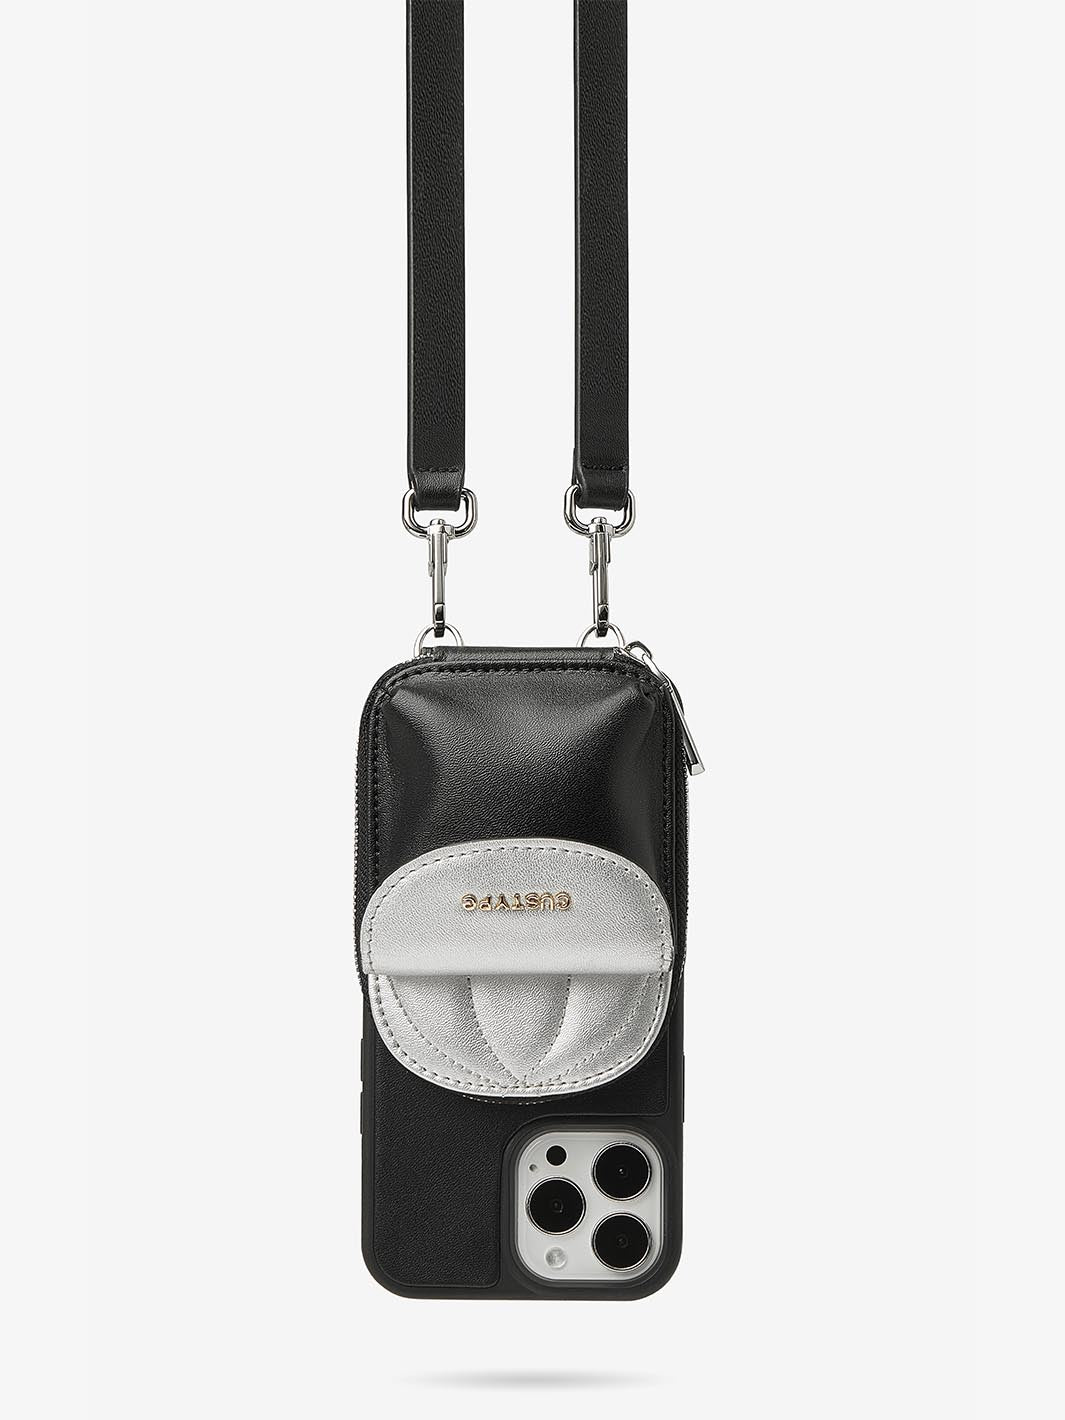 Unique basketball Cap Phone Case iPhone Cover Case Wallet Pouch Black